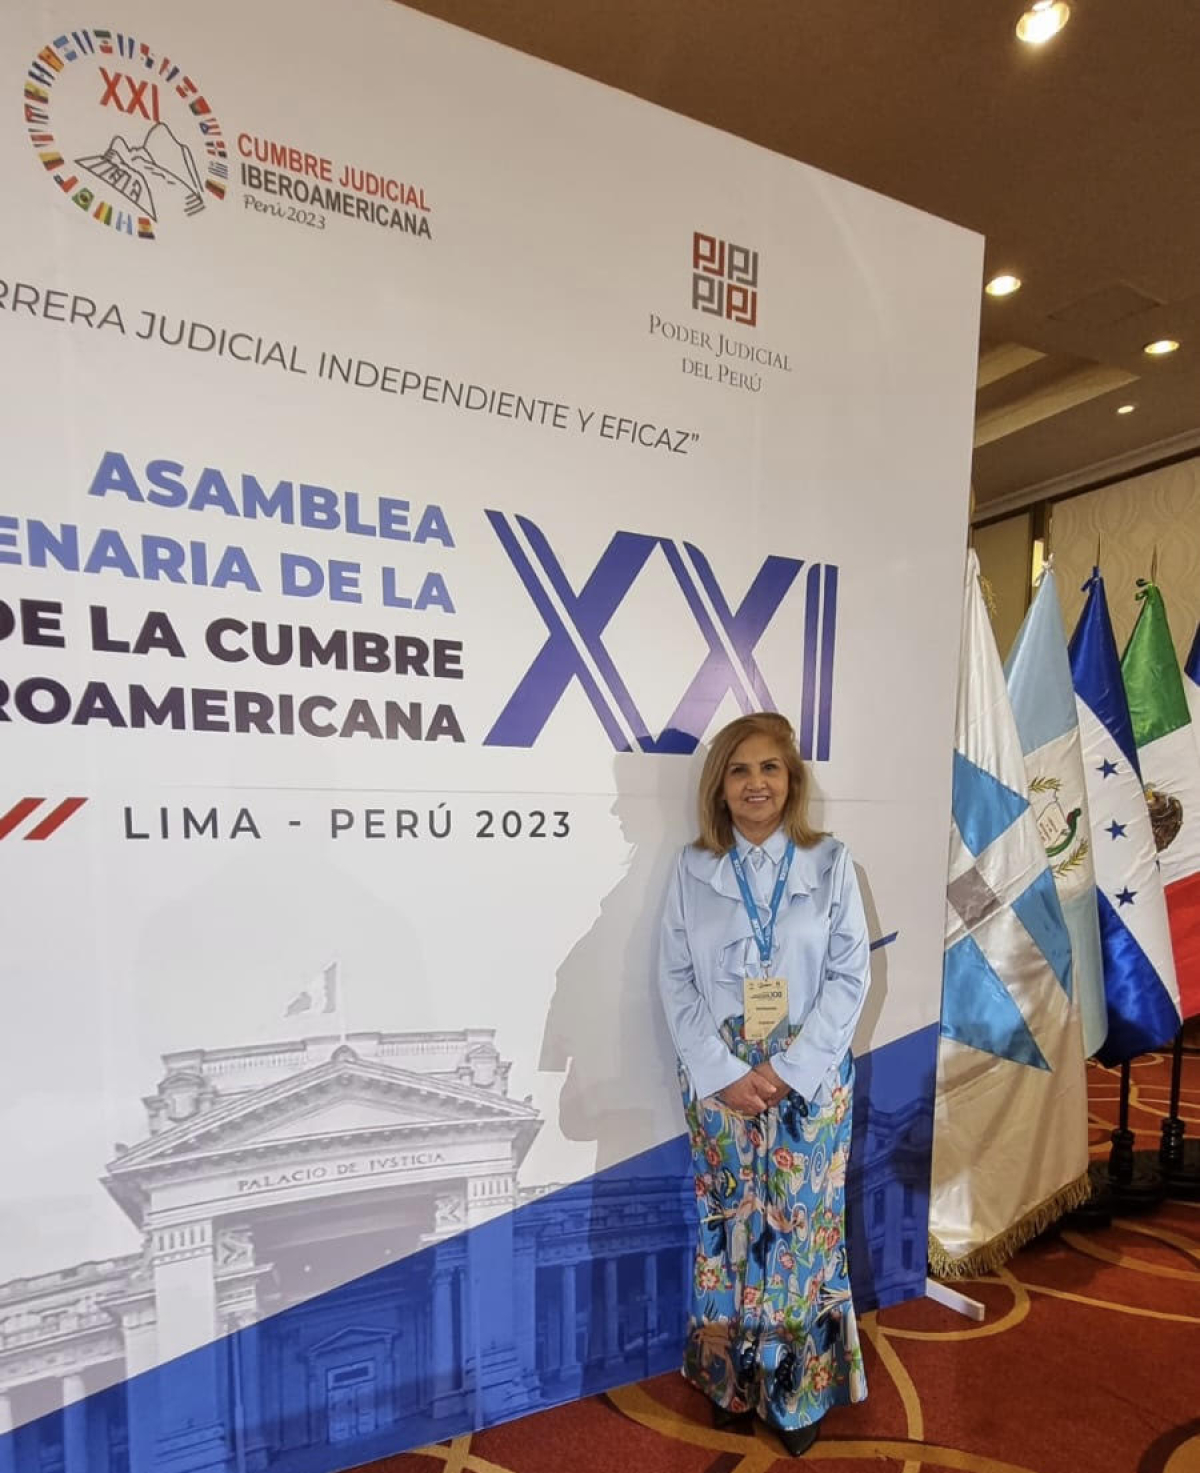 Se realiza la Asamblea Plenaria de la Cumbre Judicial Iberoamericana en Perú.